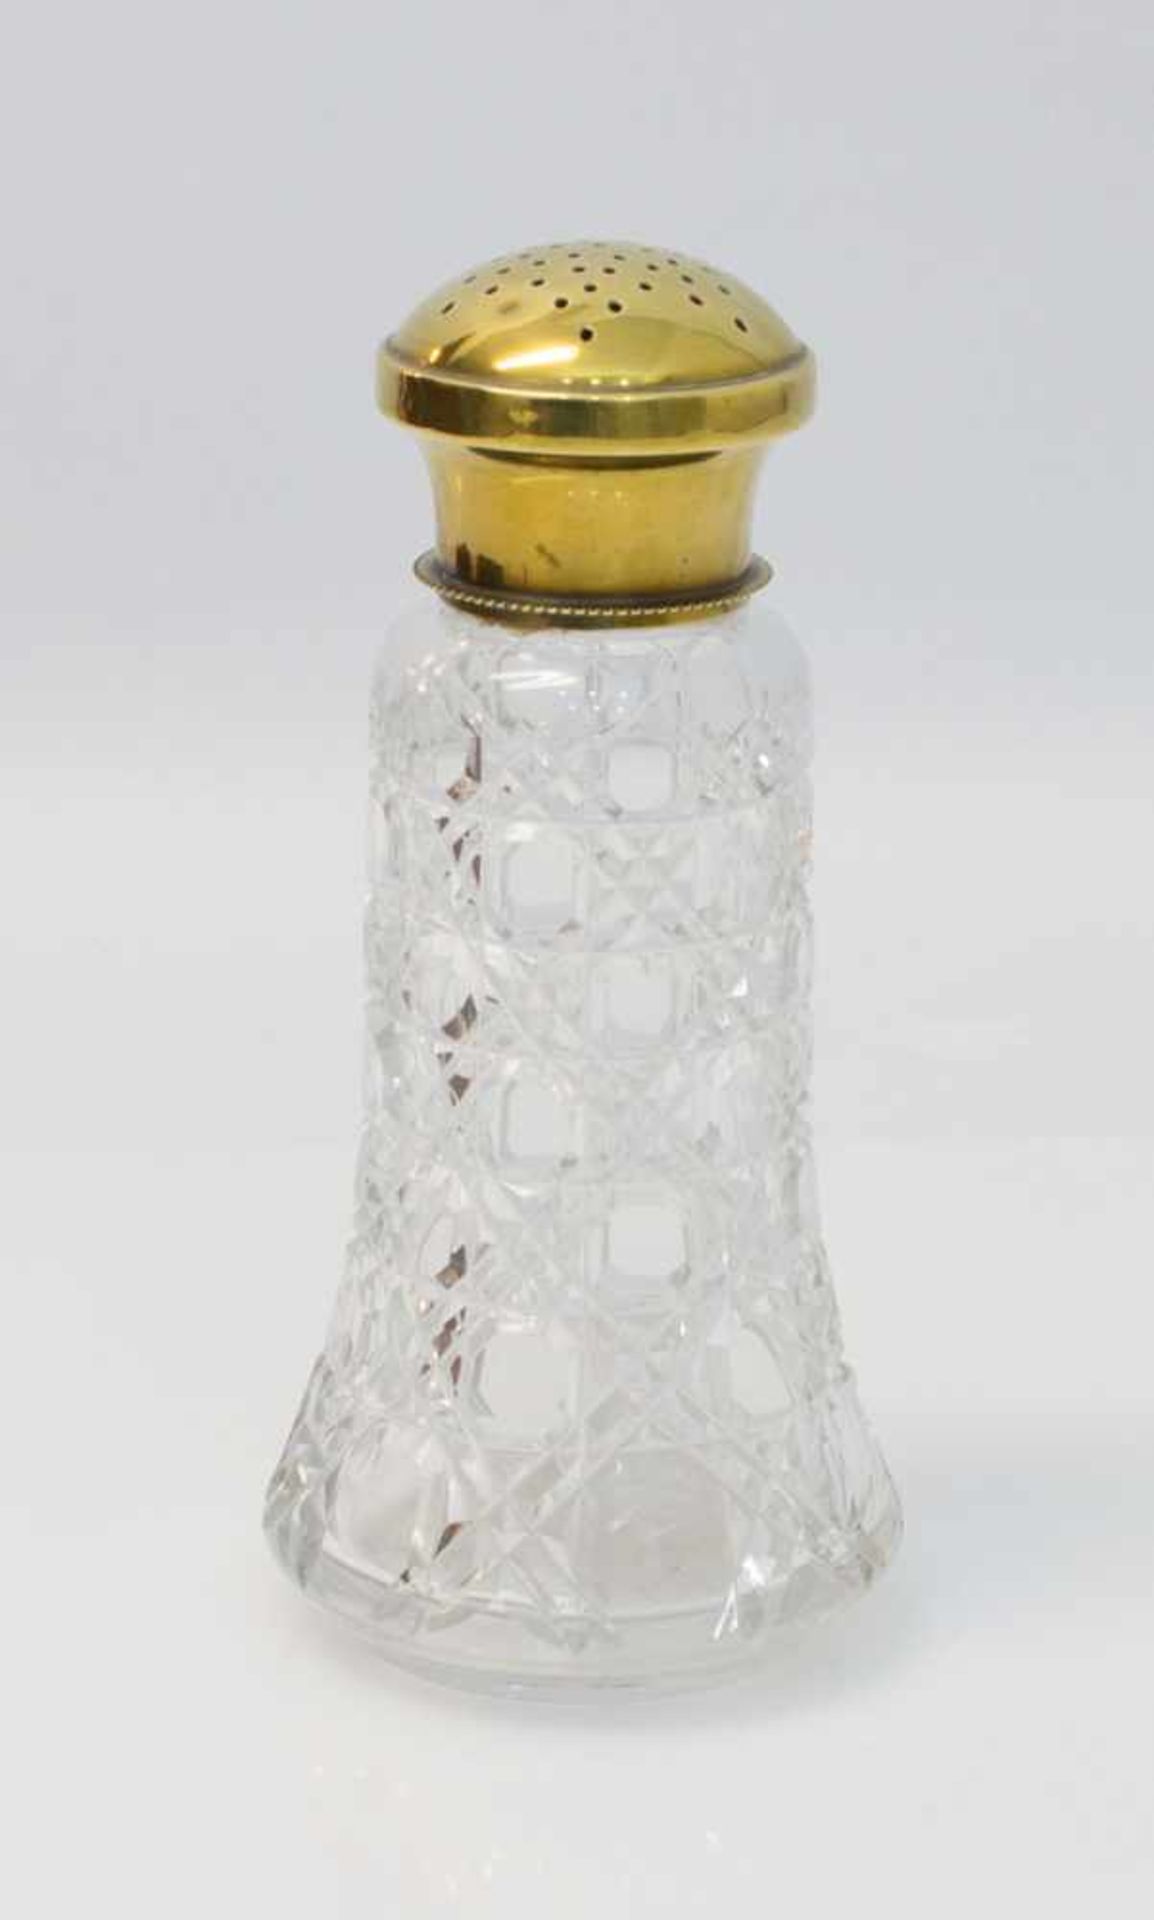 Zuckerstreuer um 1860, Kristallglas, von Hand geschliffen, Metalldeckel, 17 cm